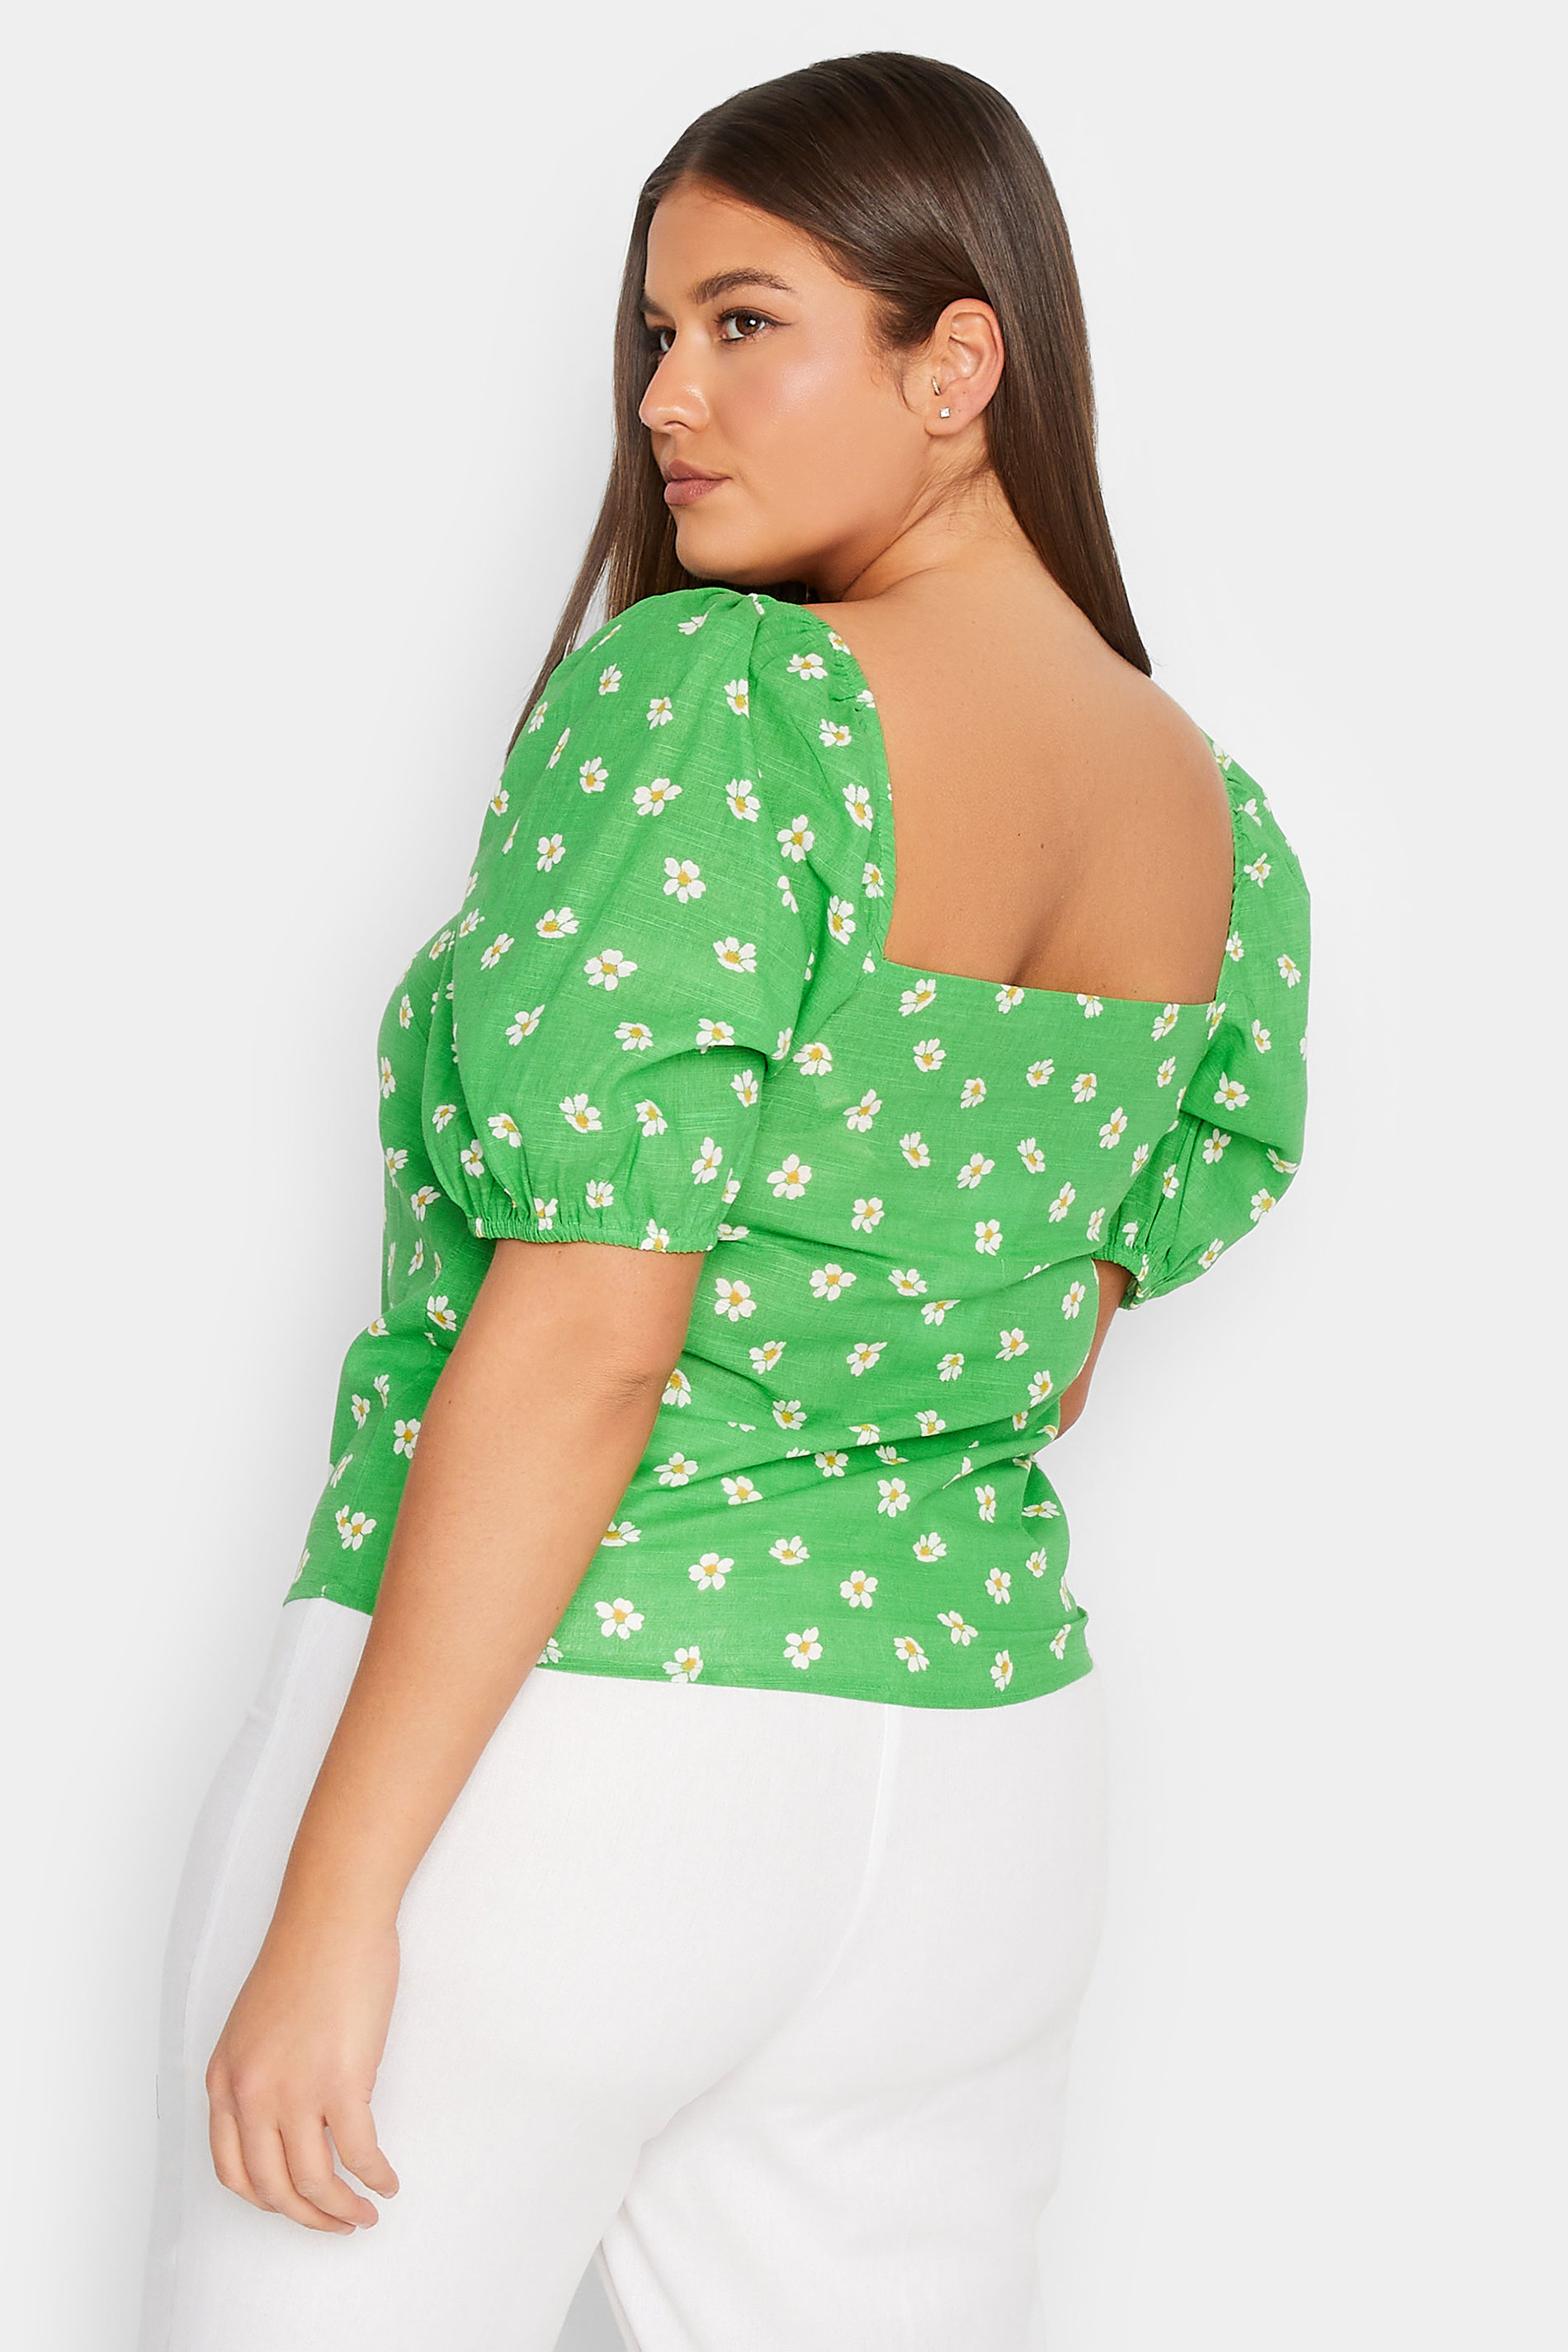 LTS Tall Women's Green Floral Print Linen Blend Top | Long Tall Sally 2